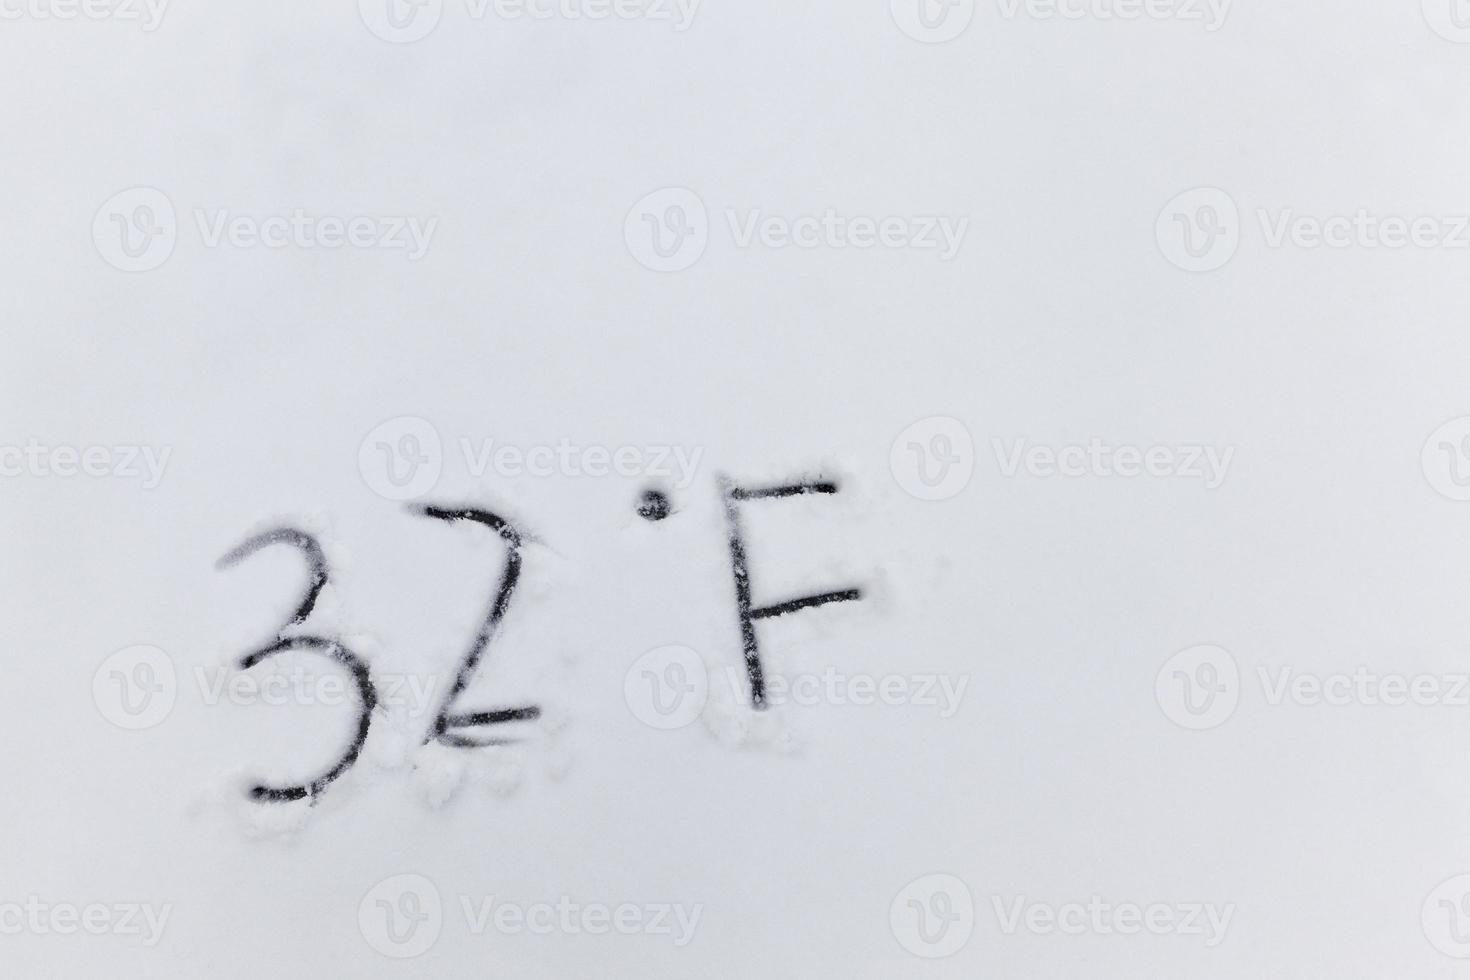 ritade på snön, temperatursymboler som anger negativt mycket kallt väder foto